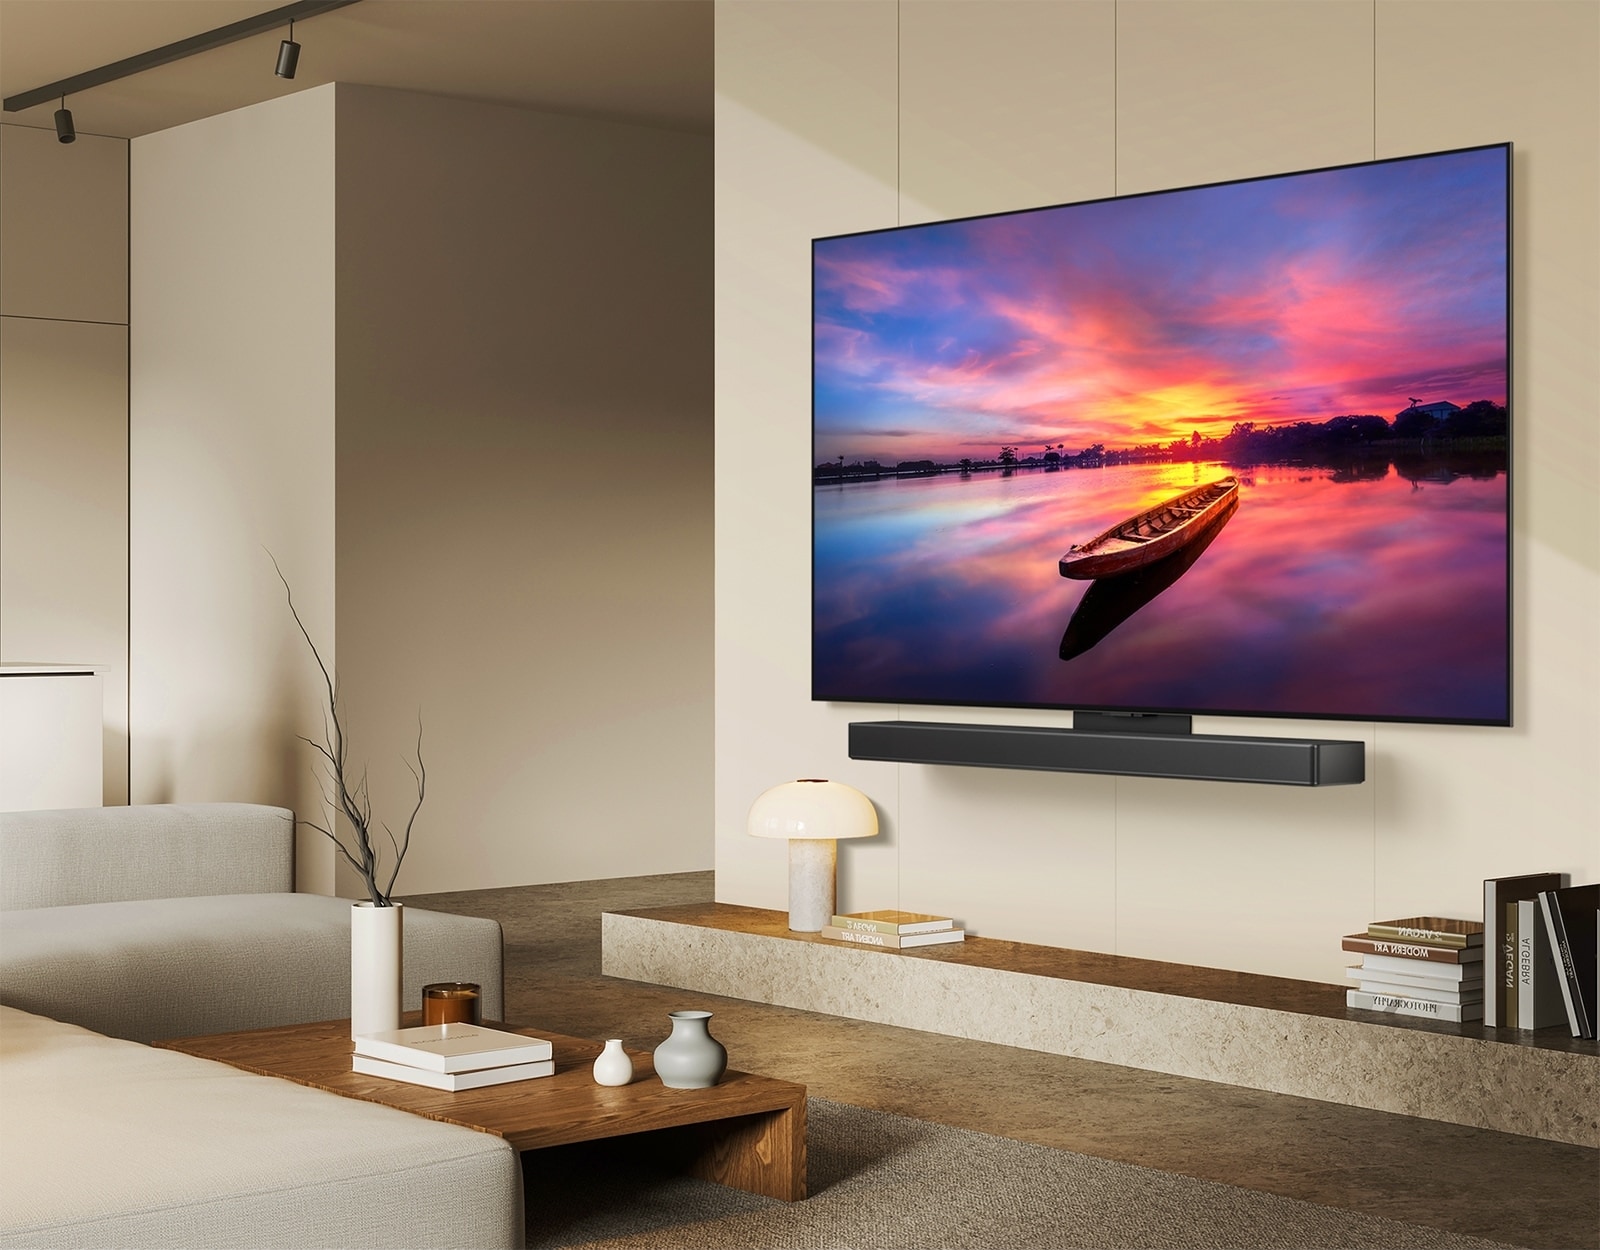 LG OLED TV, OLED C4 is 45 graden naar links gericht met een prachtige zonsondergang met een boot op een meer in beeld. De TV is bevestigd aan een LG Soundbar via de Synergy-beugel in een minimalistische woonruimte.